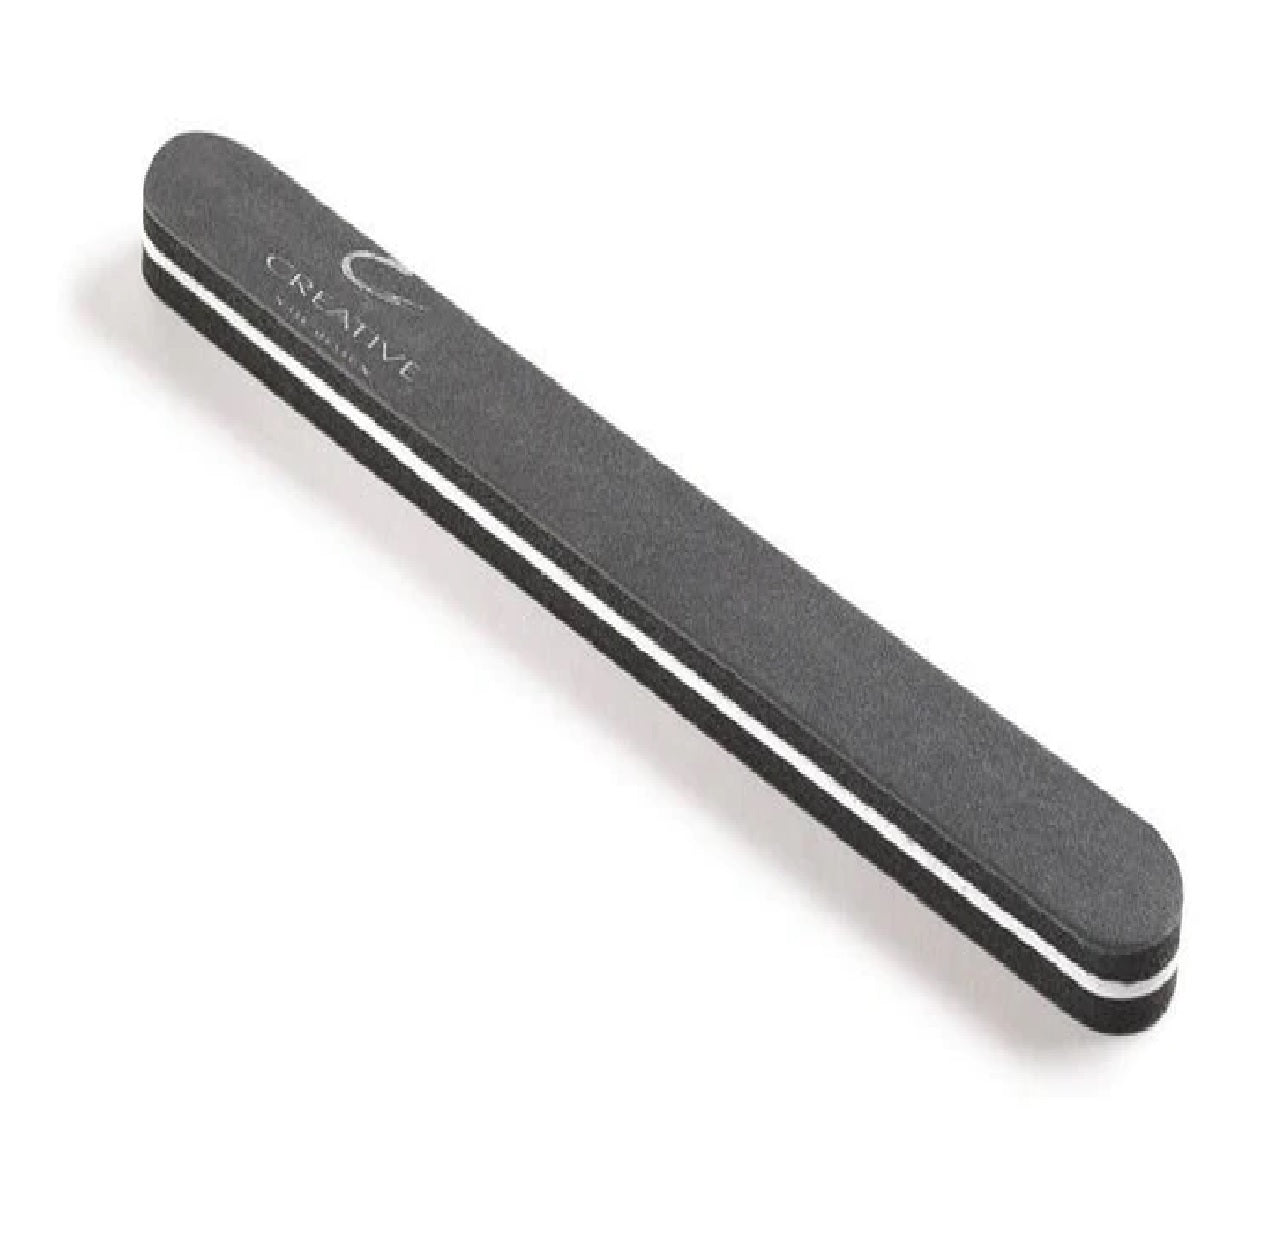 CND Nail Tools - Boomerang Padded Buffer - 180/180 Grit